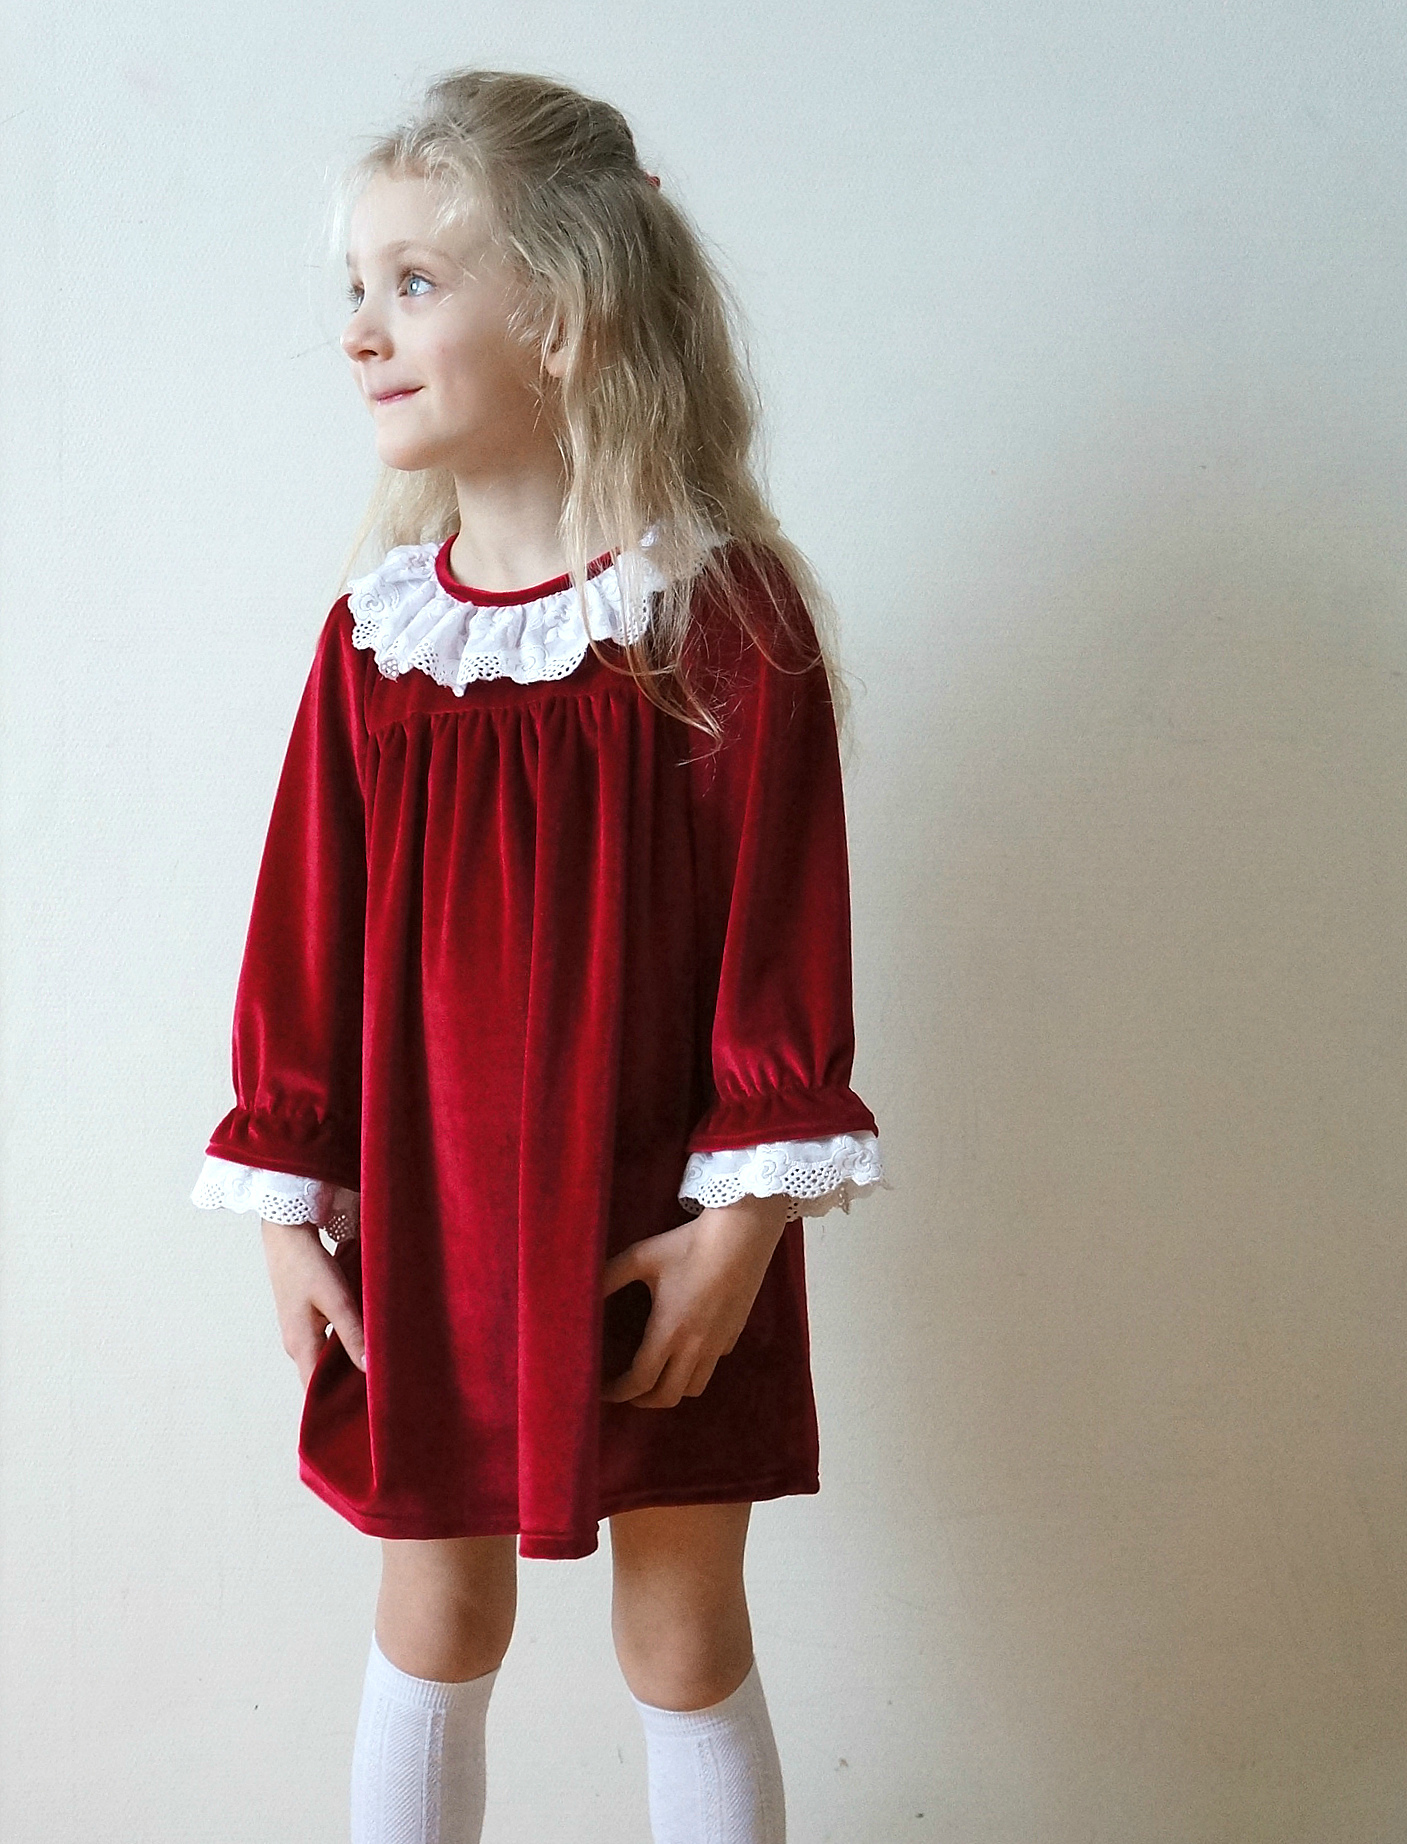 Платье для девочки своими руками на 8-9 лет. Мастер-класс с пошаговыми фото